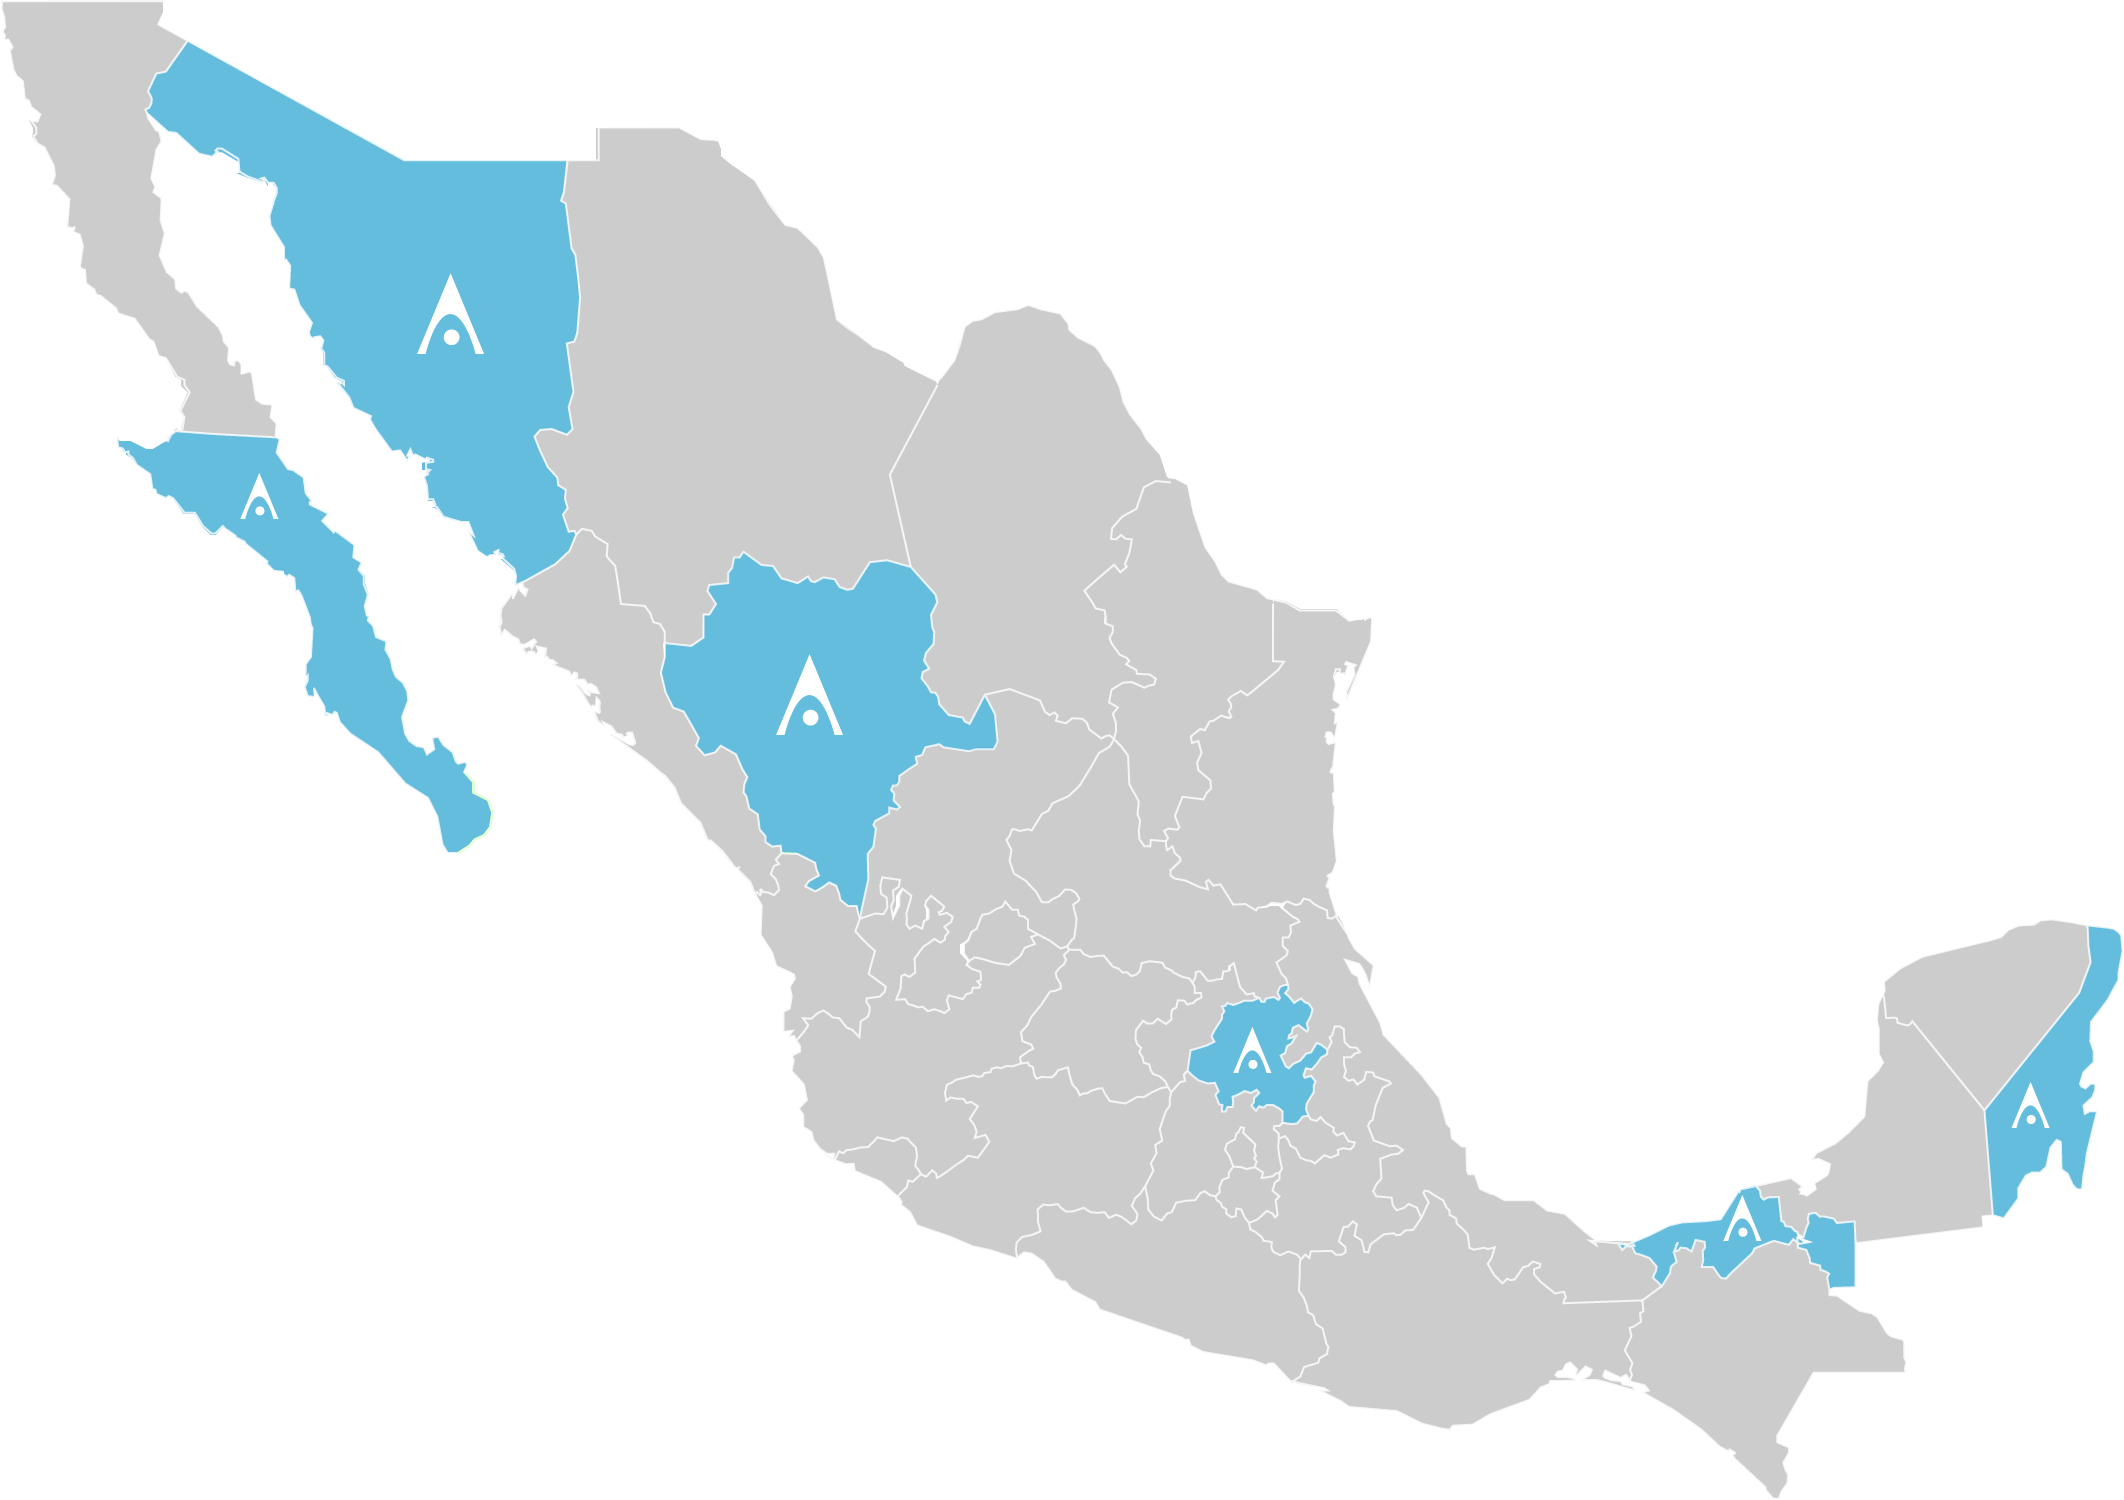 Mapa de México